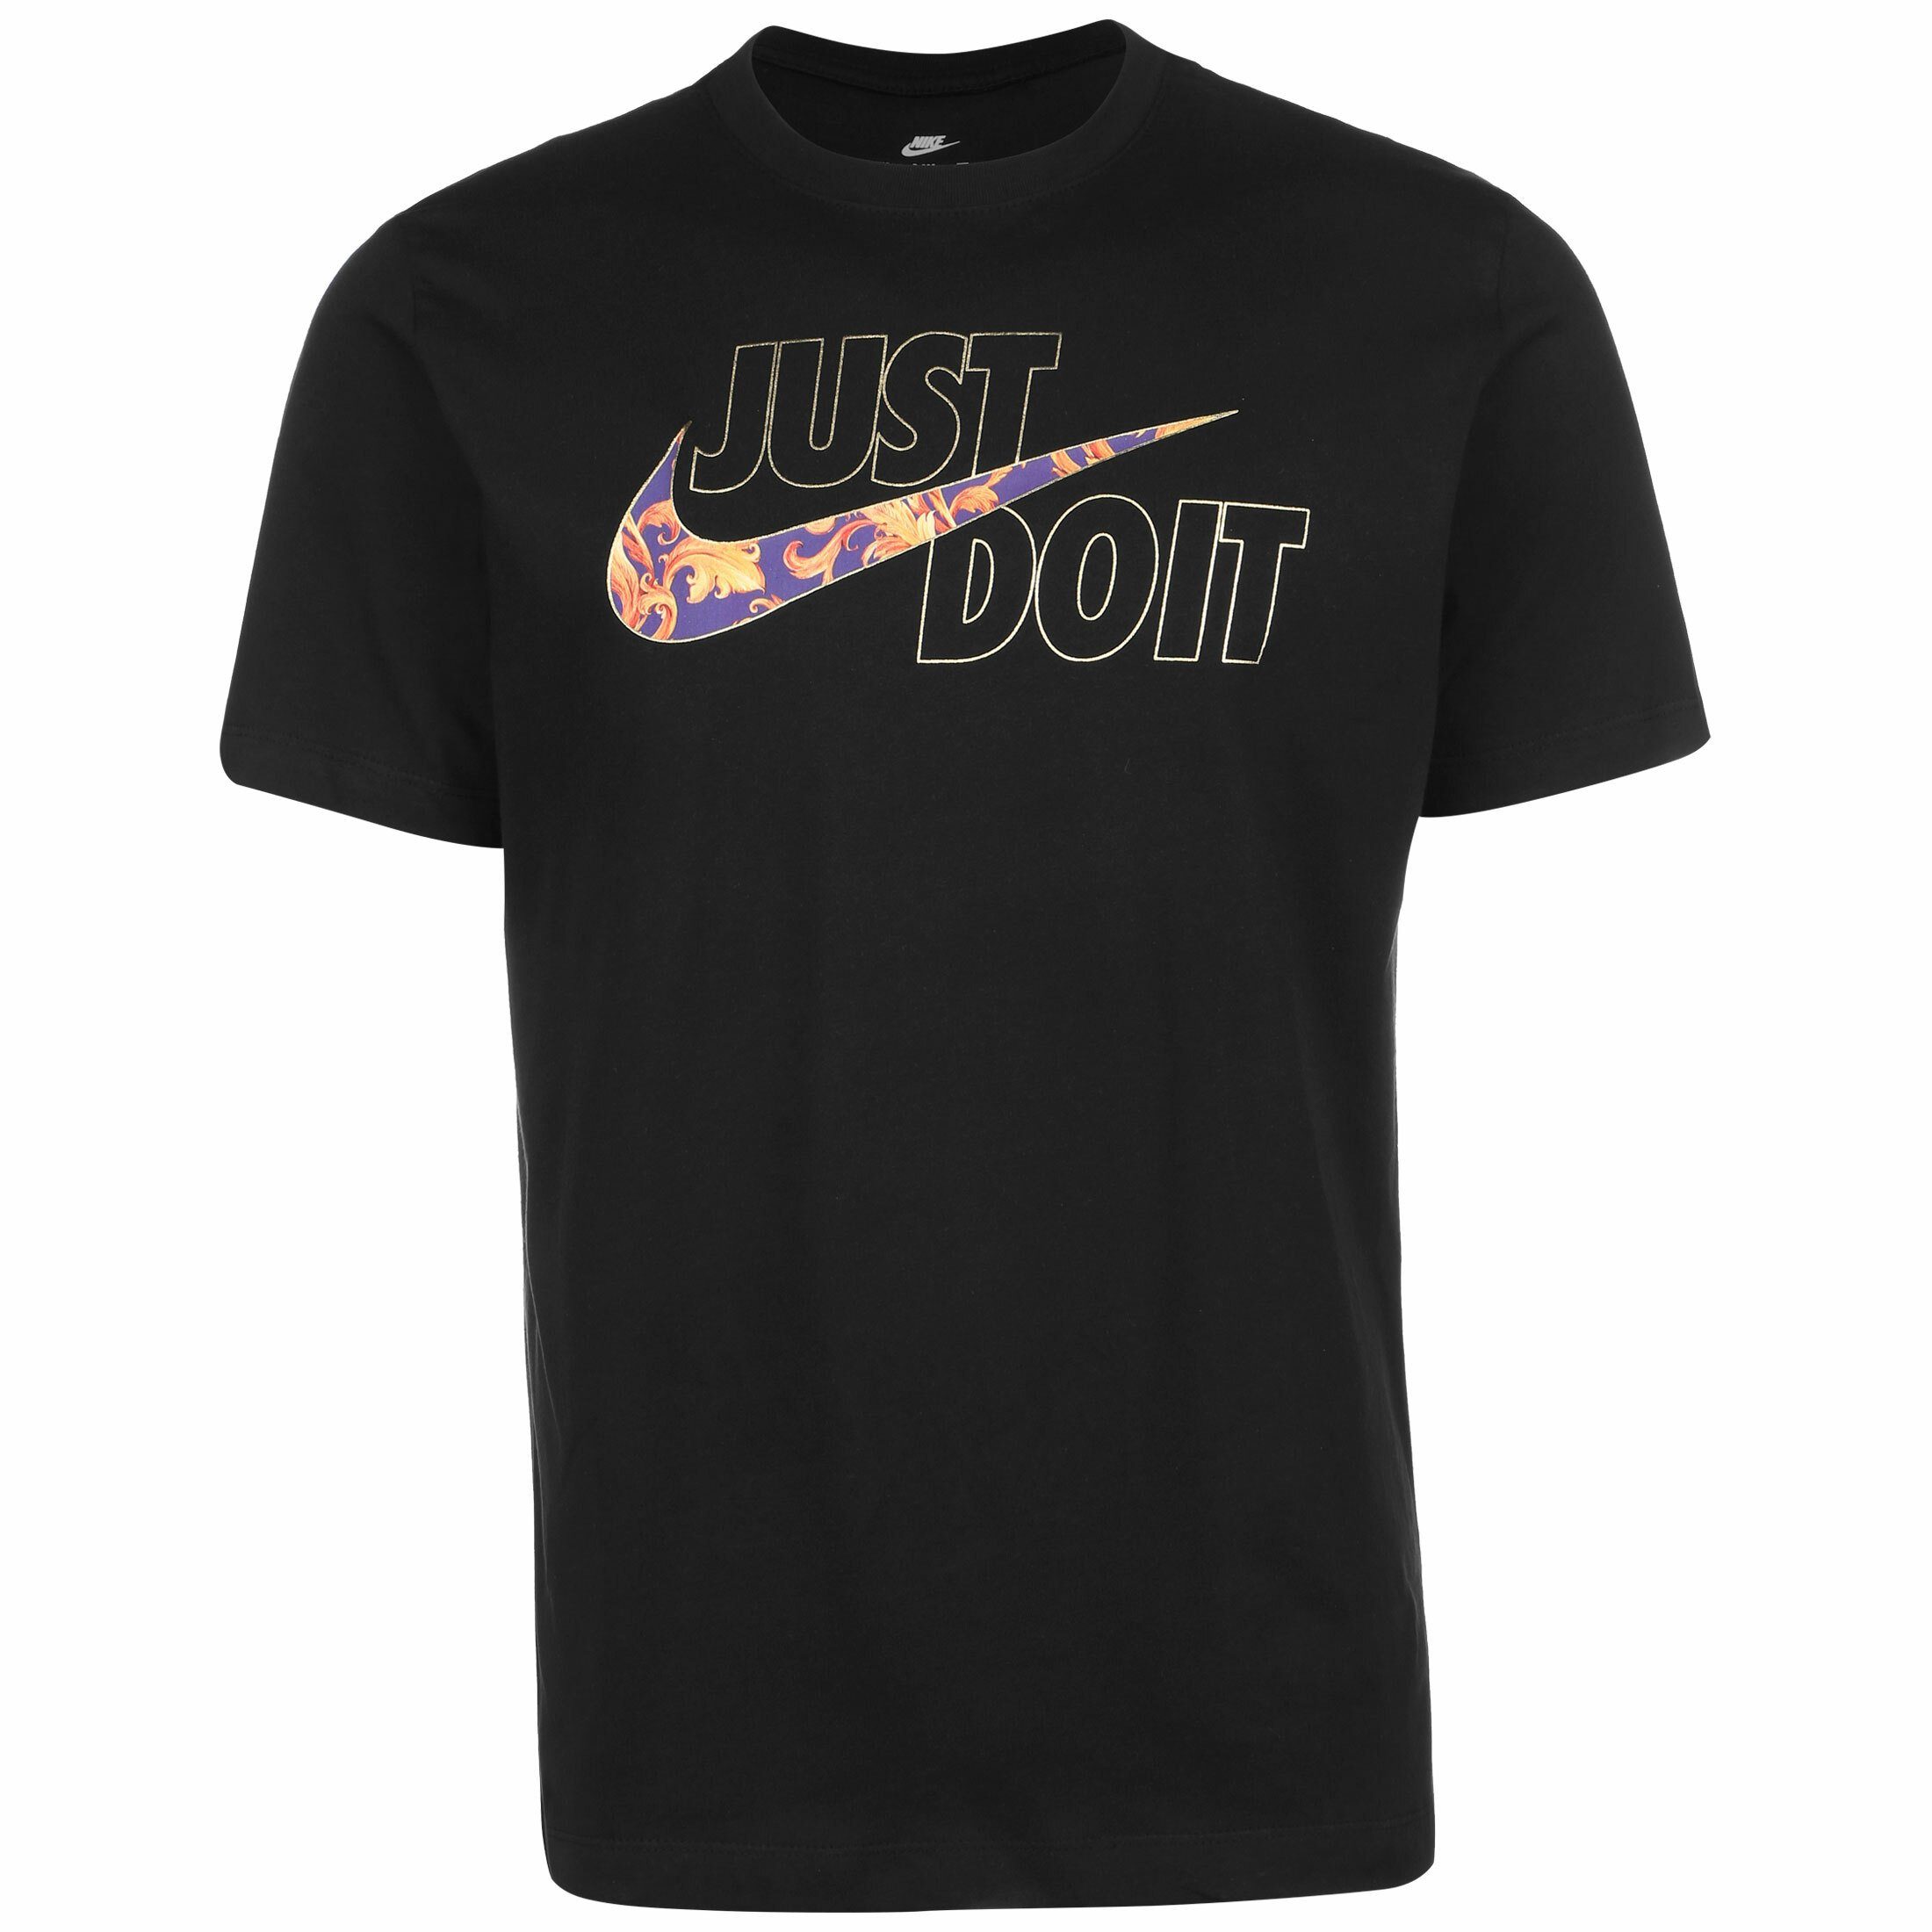 Nike Herren T-Shirts online kaufen | OTTO